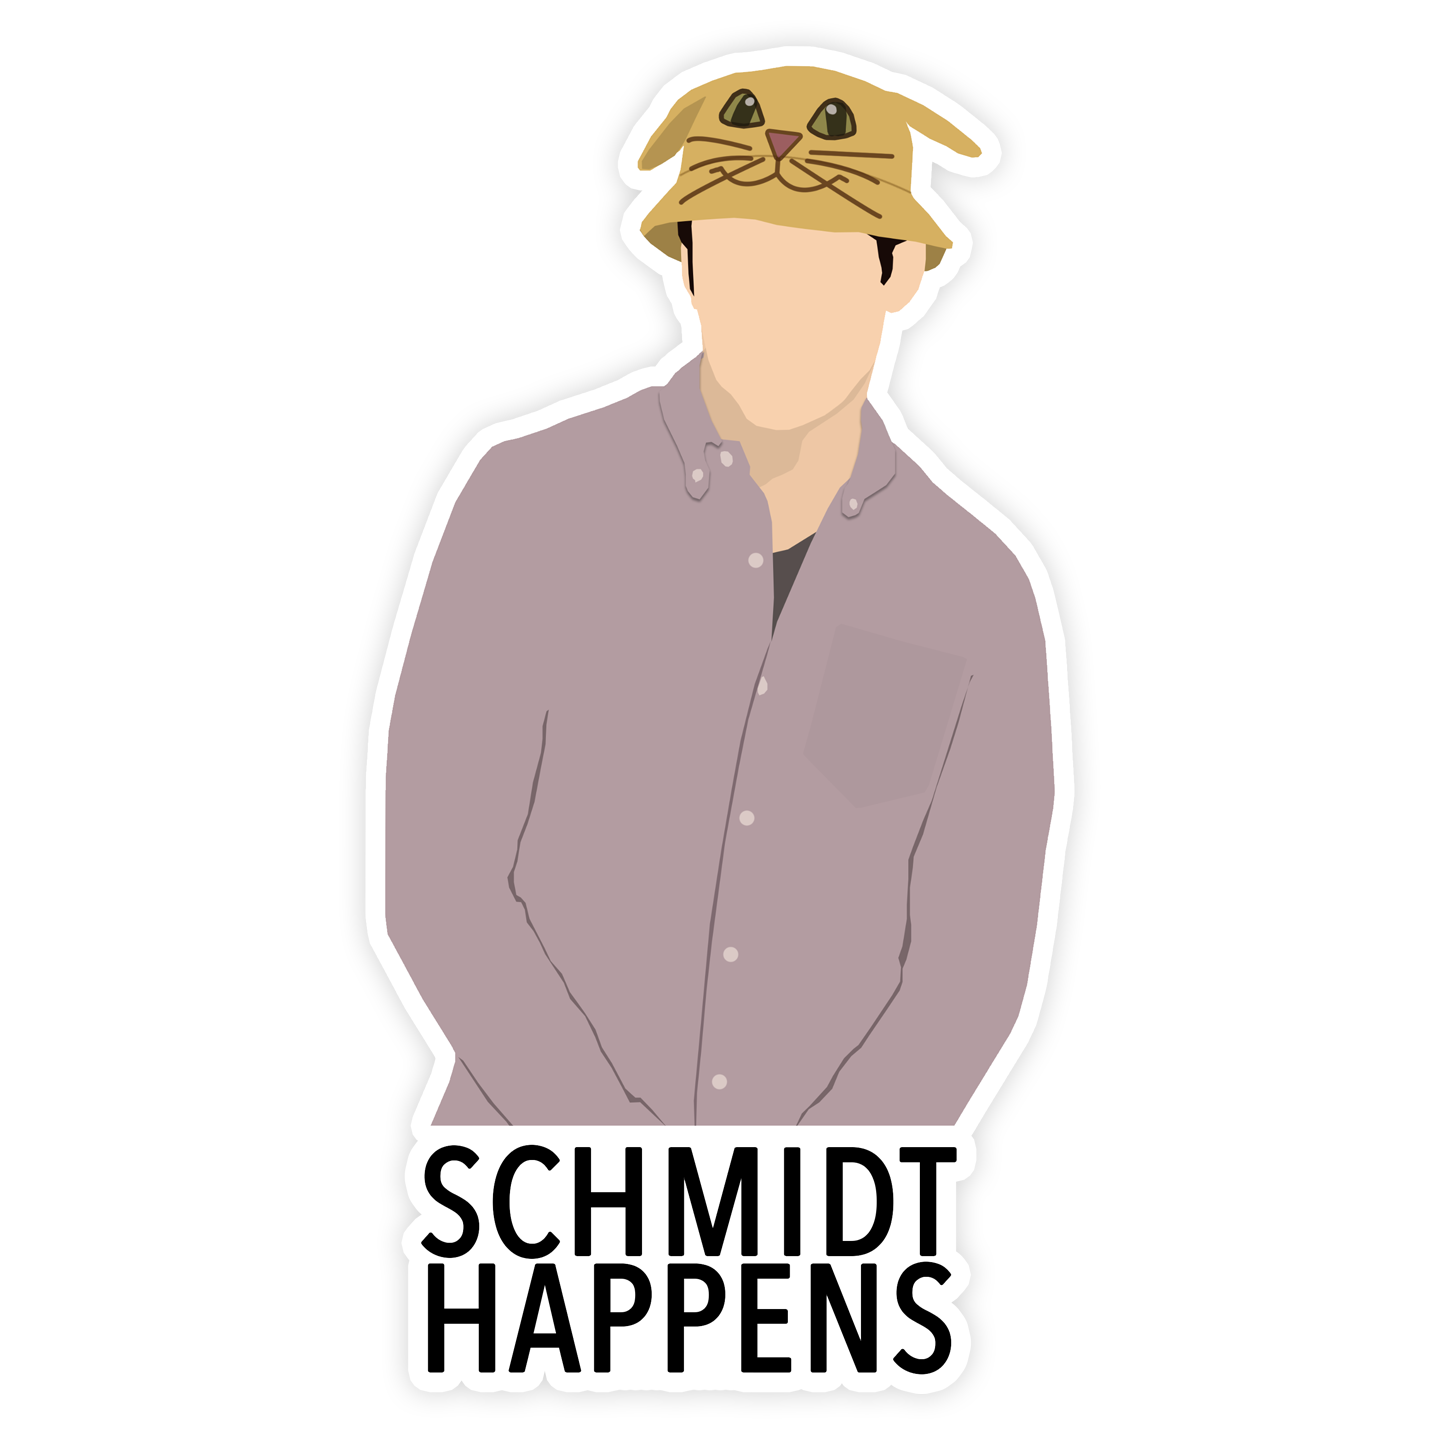 Schmidt Happens Sticker